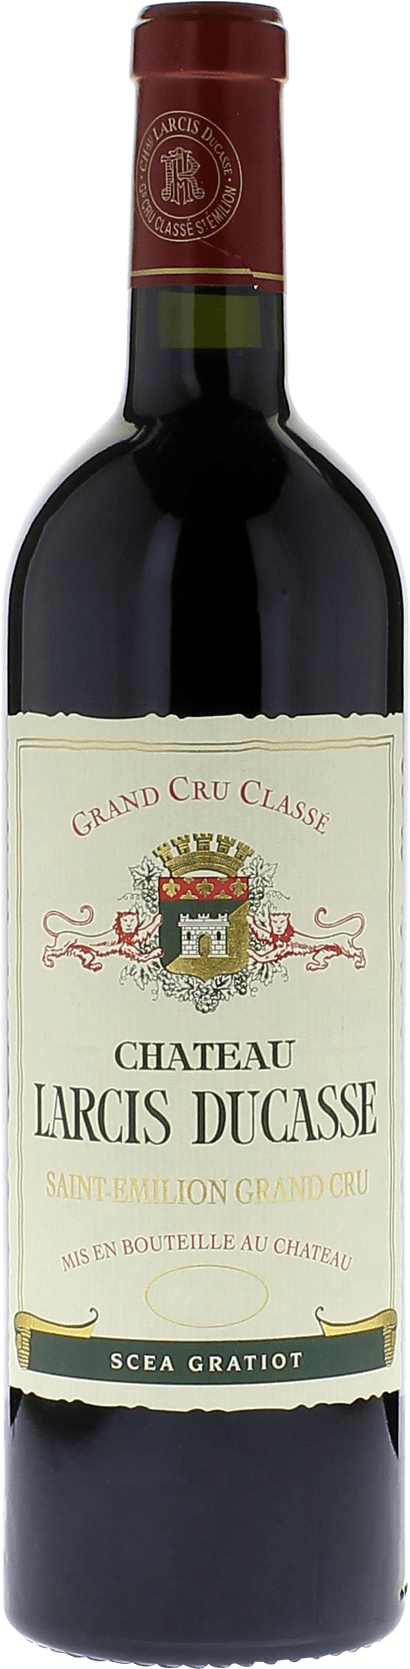 Larcis ducasse 1997 Grand cru class Saint-Emilion, Bordeaux rouge